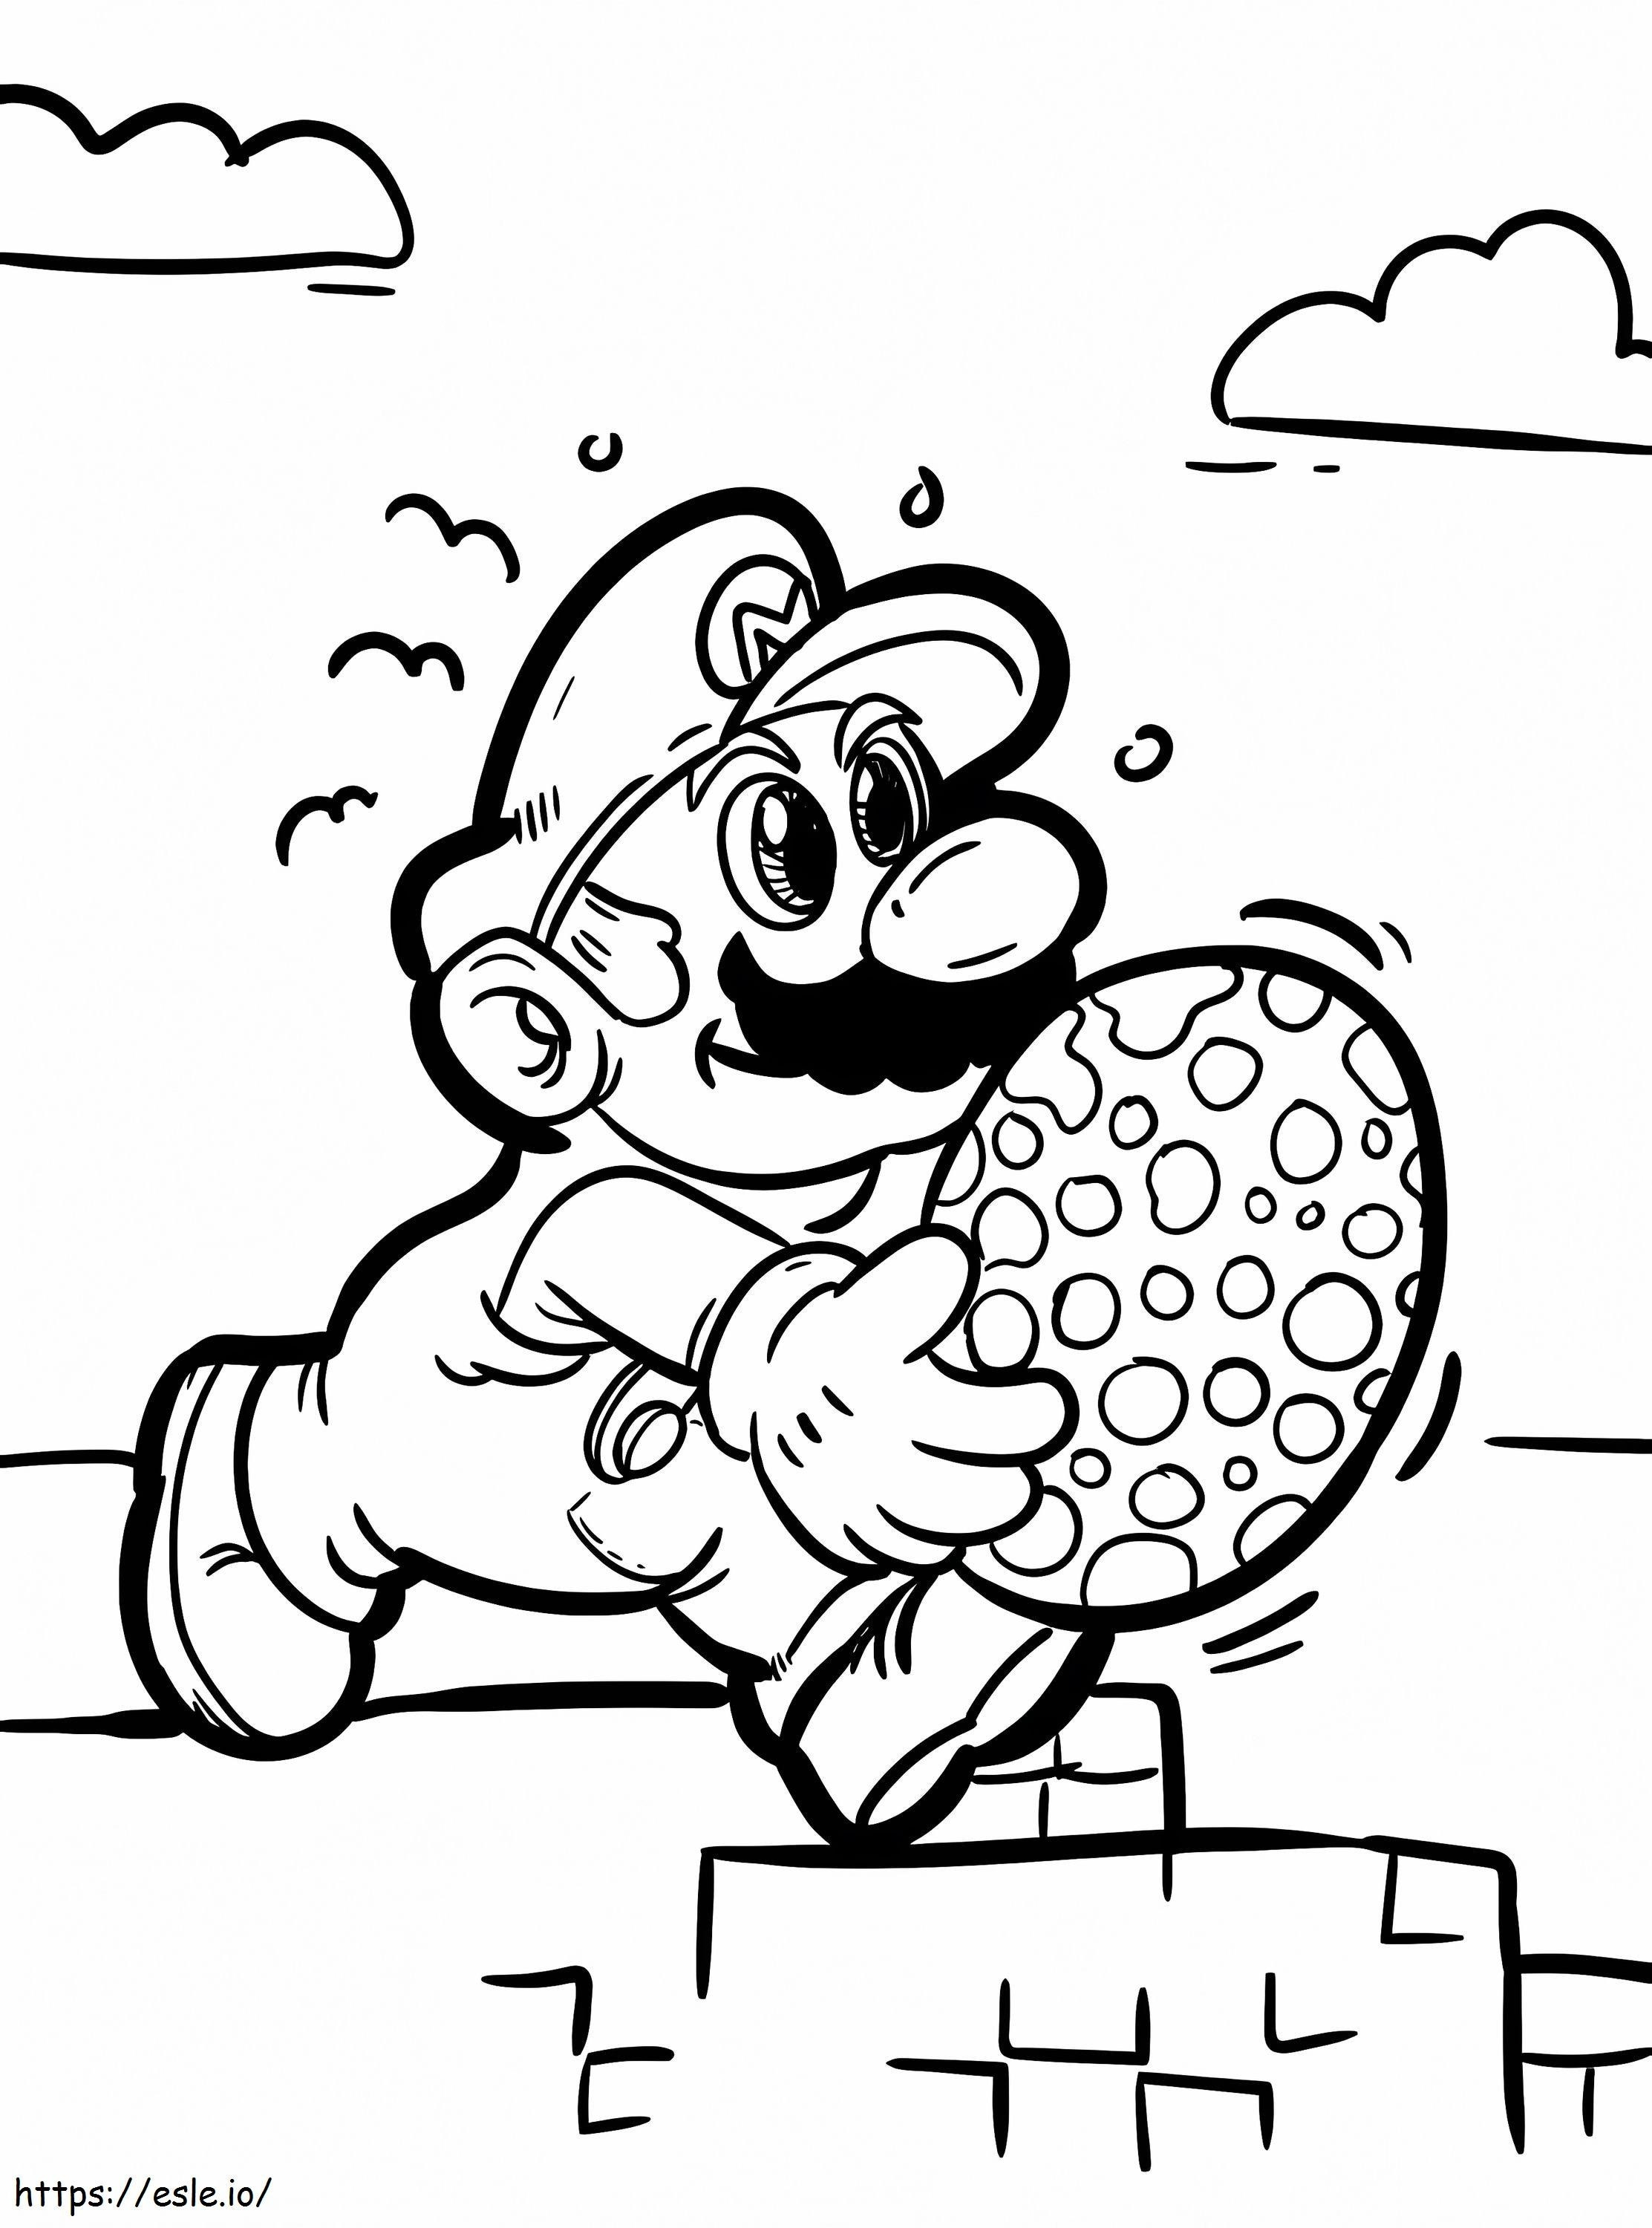 Mario dan Telur Gambar Mewarnai